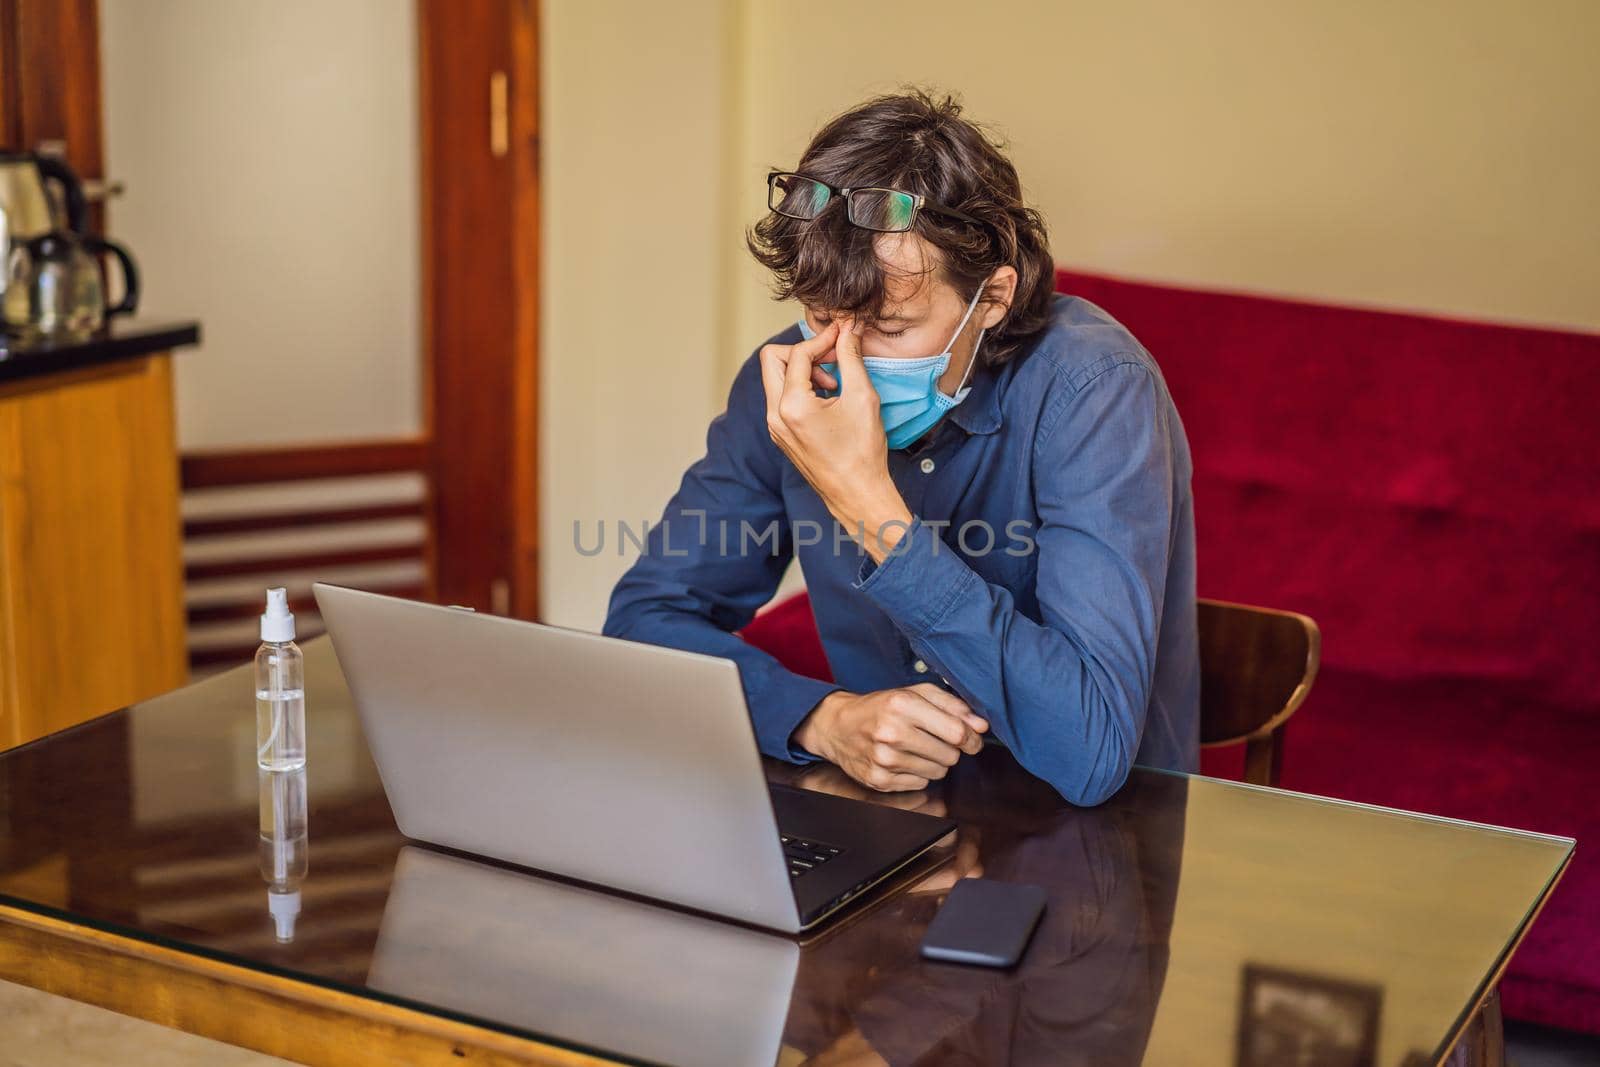 Coronavirus. Man working from home wearing protective mask. quarantine for coronavirus wearing protective mask. Working from home by galitskaya